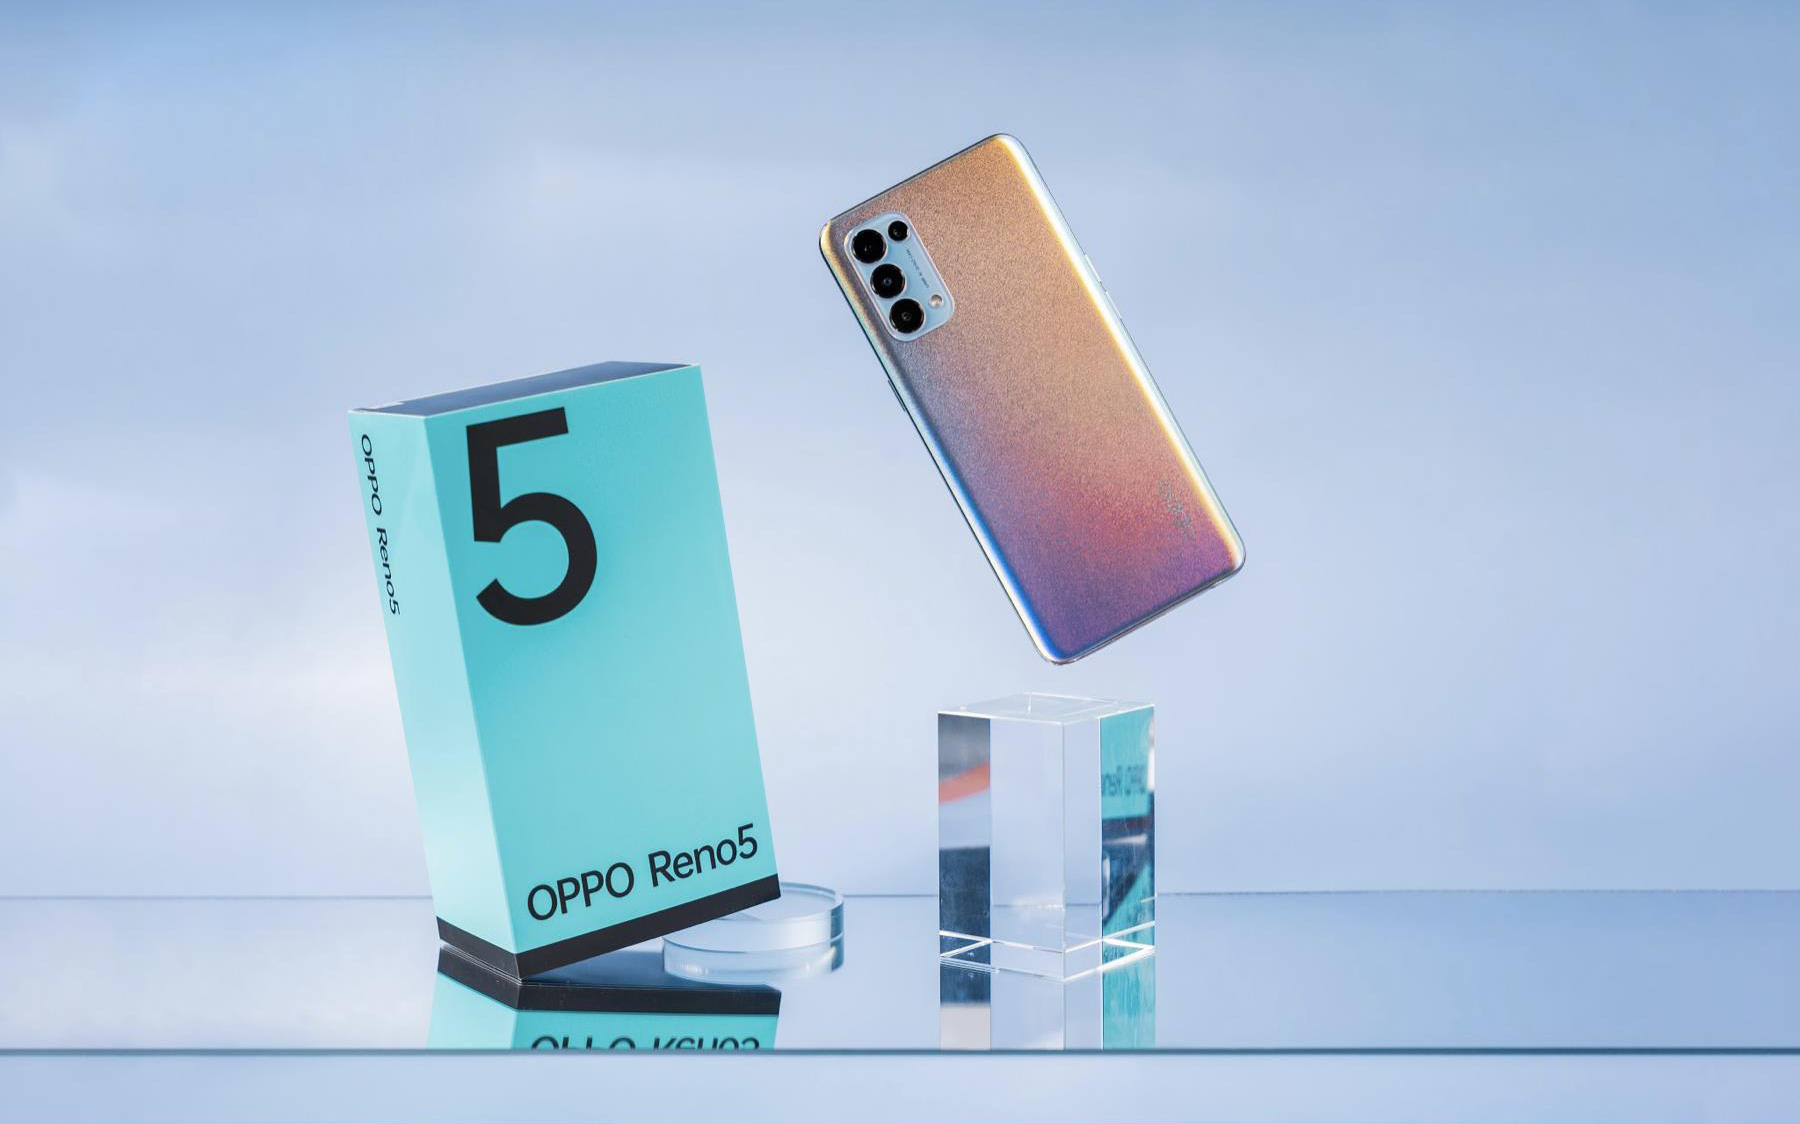 Thị trường suy giảm nhưng OPPO Reno5 vẫn trong top smartphone bán chạy hàng đầu tháng 1/2021